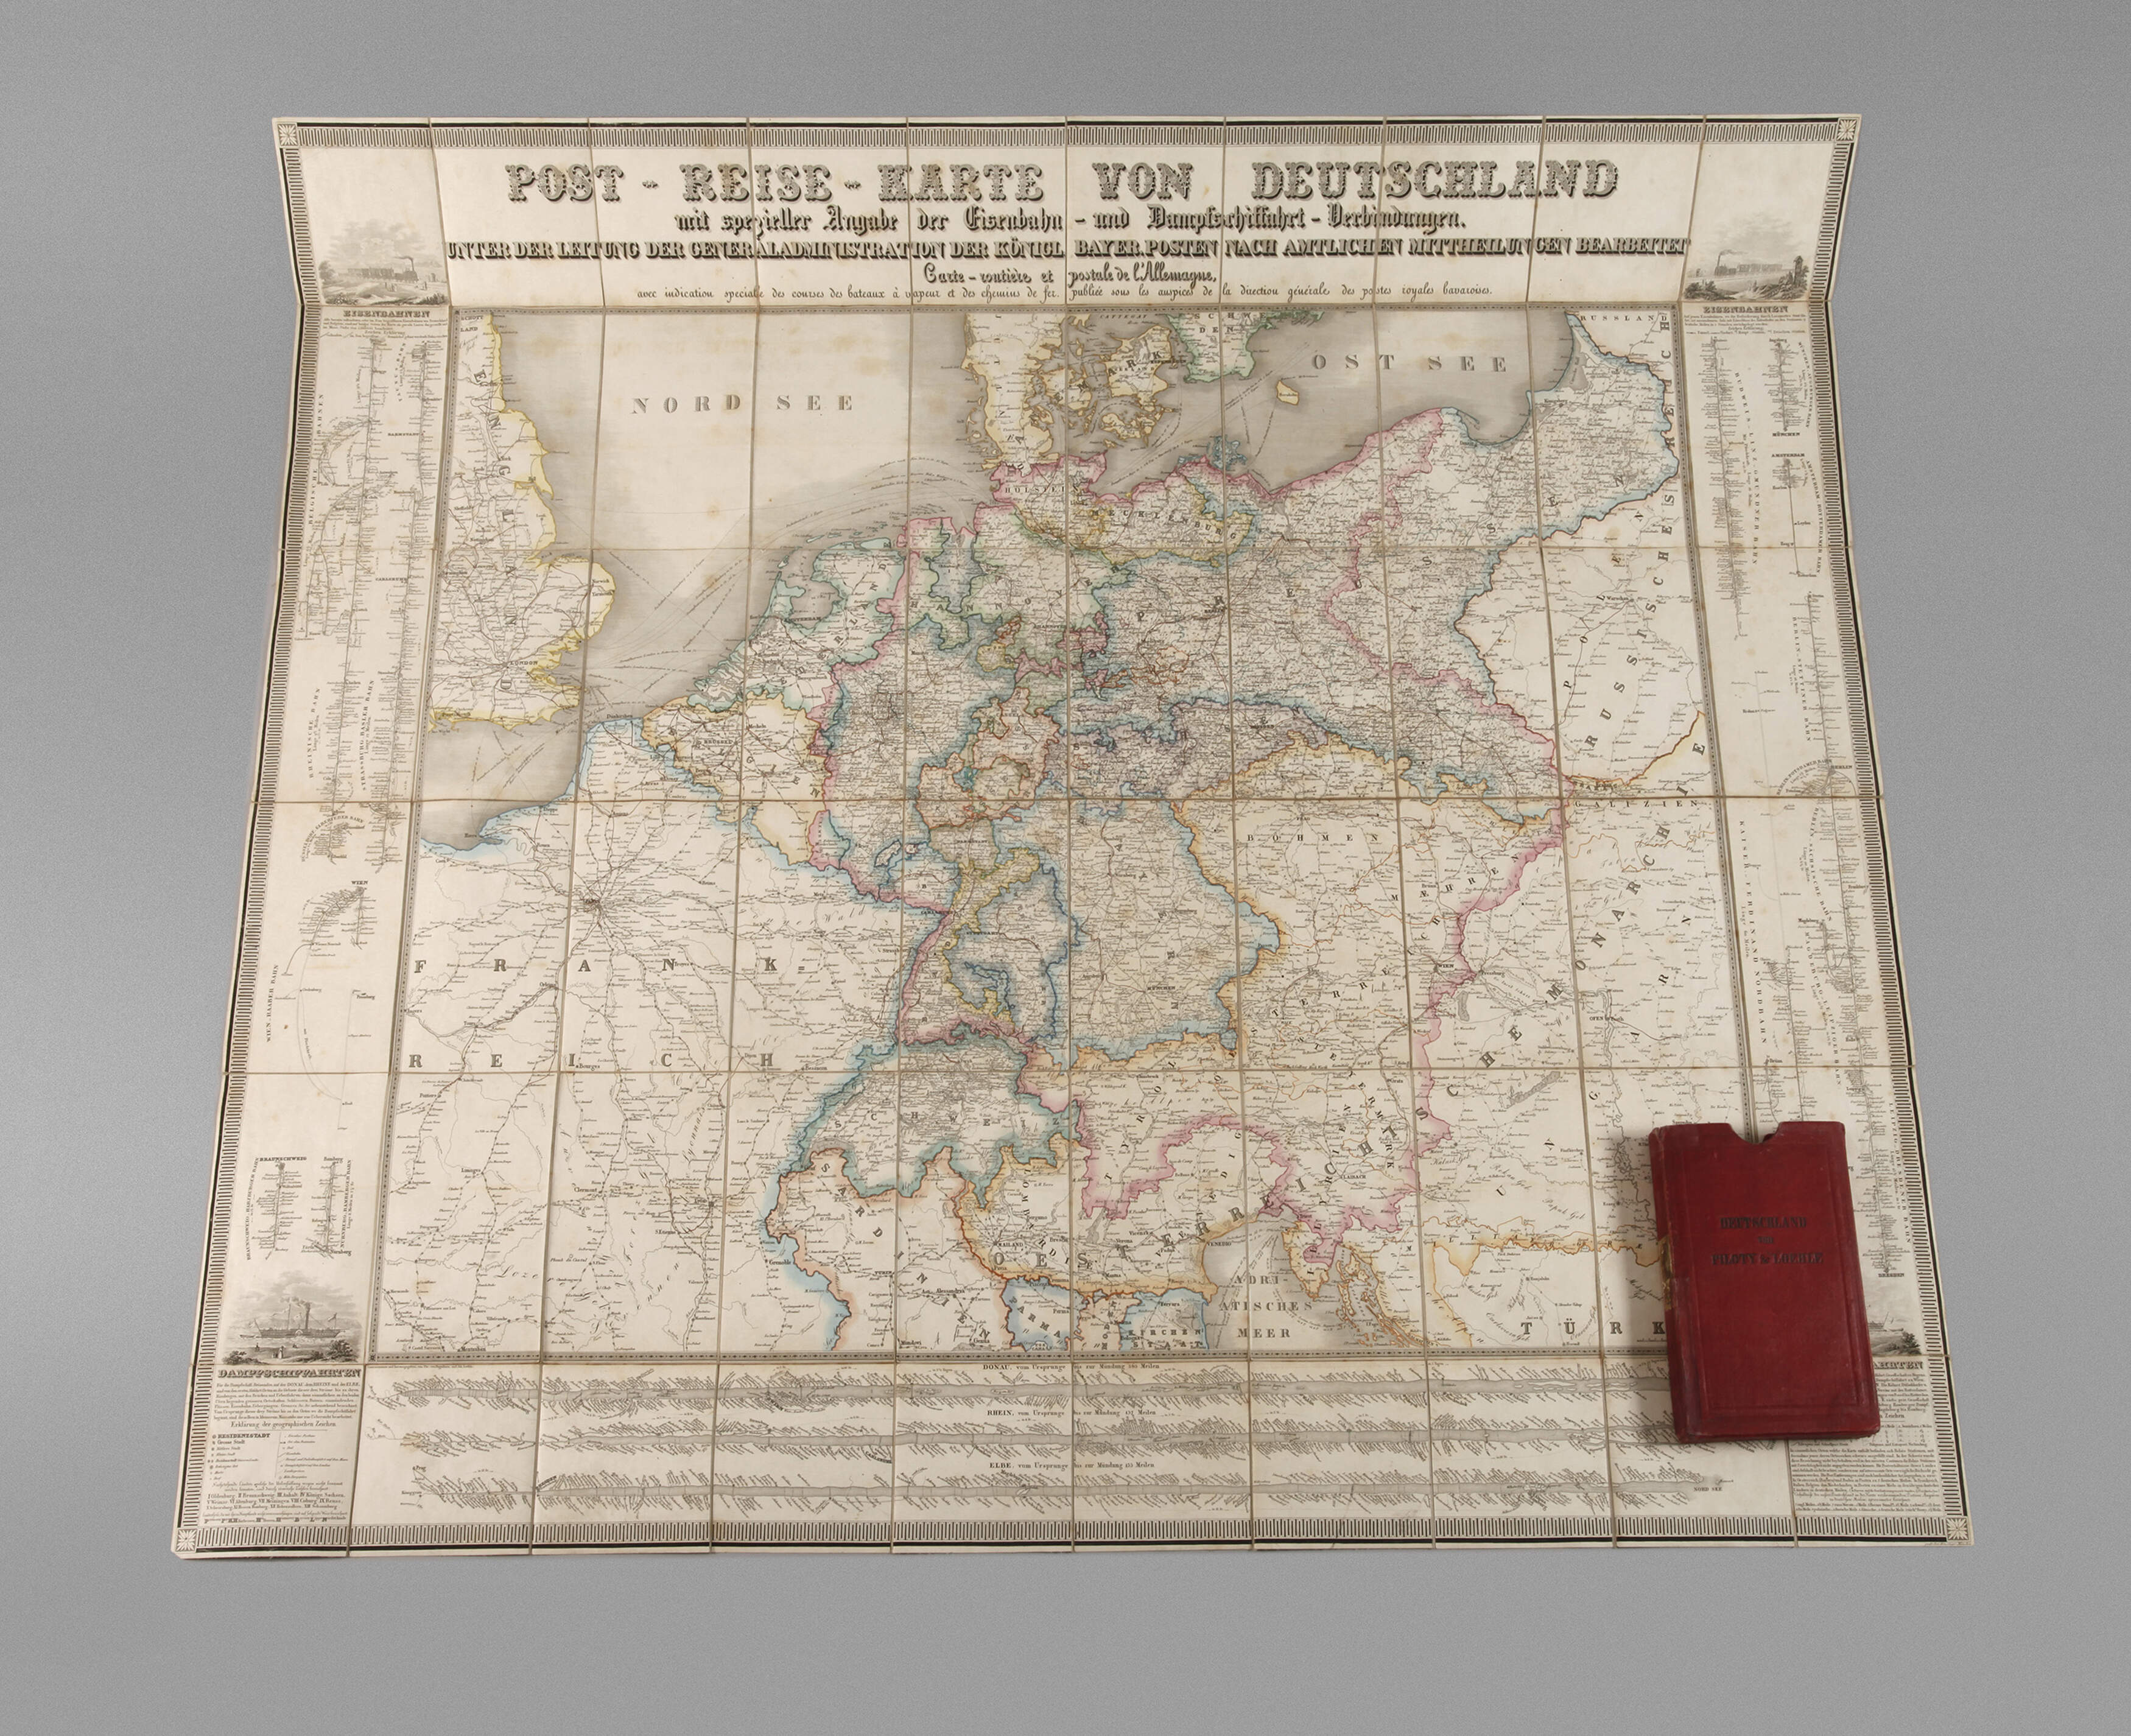 "Post-Reise-Karte von Deutschland"